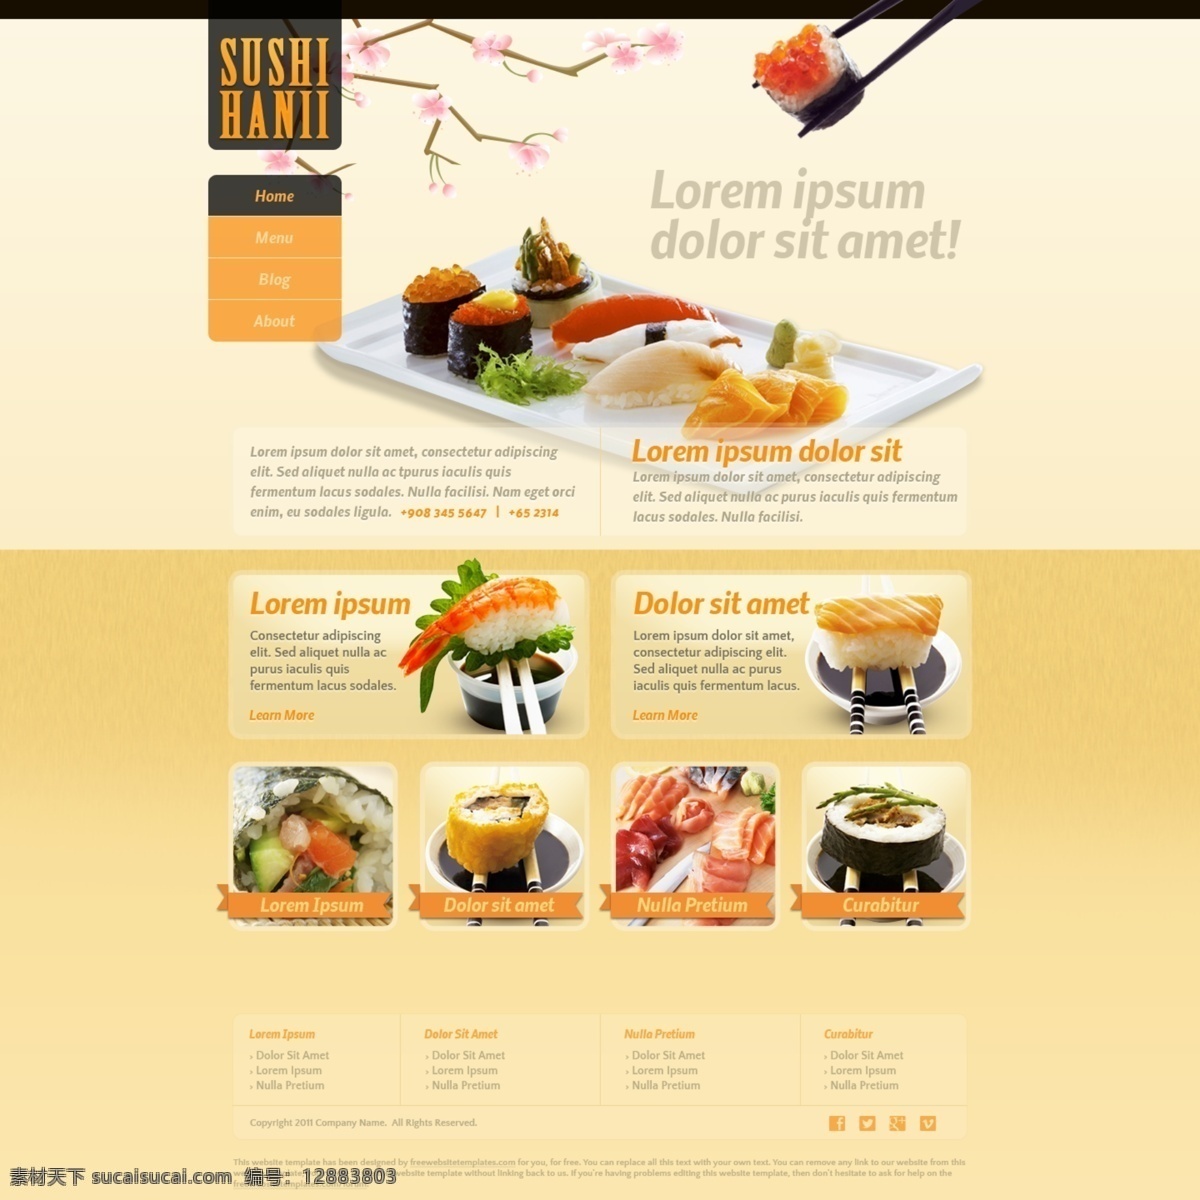 国外 料理 梅花 美食 模版 日本 食品 食品网站 网站 模板下载 英文模板 网页模板 源文件 网页素材